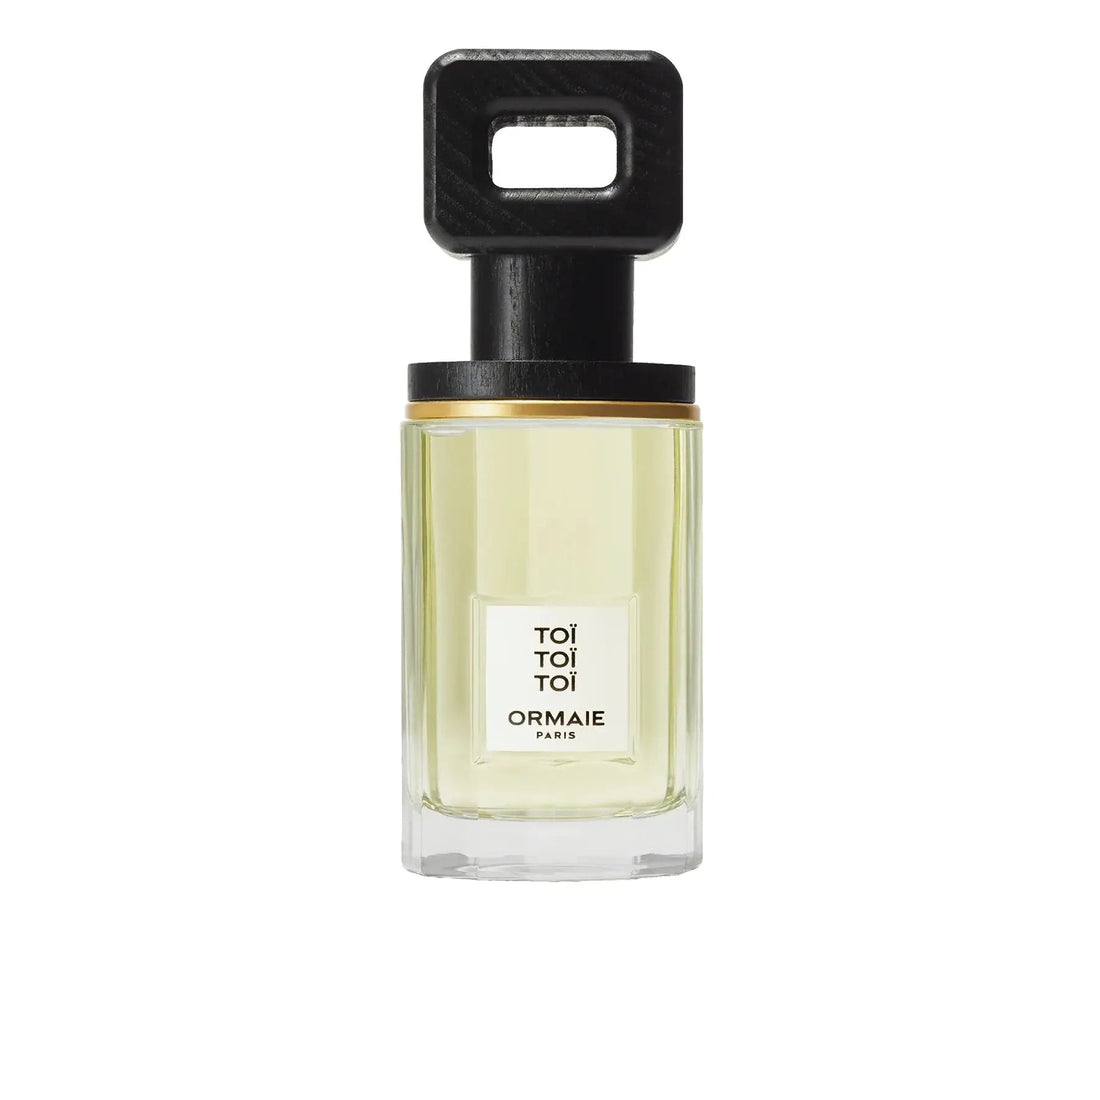 Ormaie Toi Toi Toi eau de parfum - 50 ml